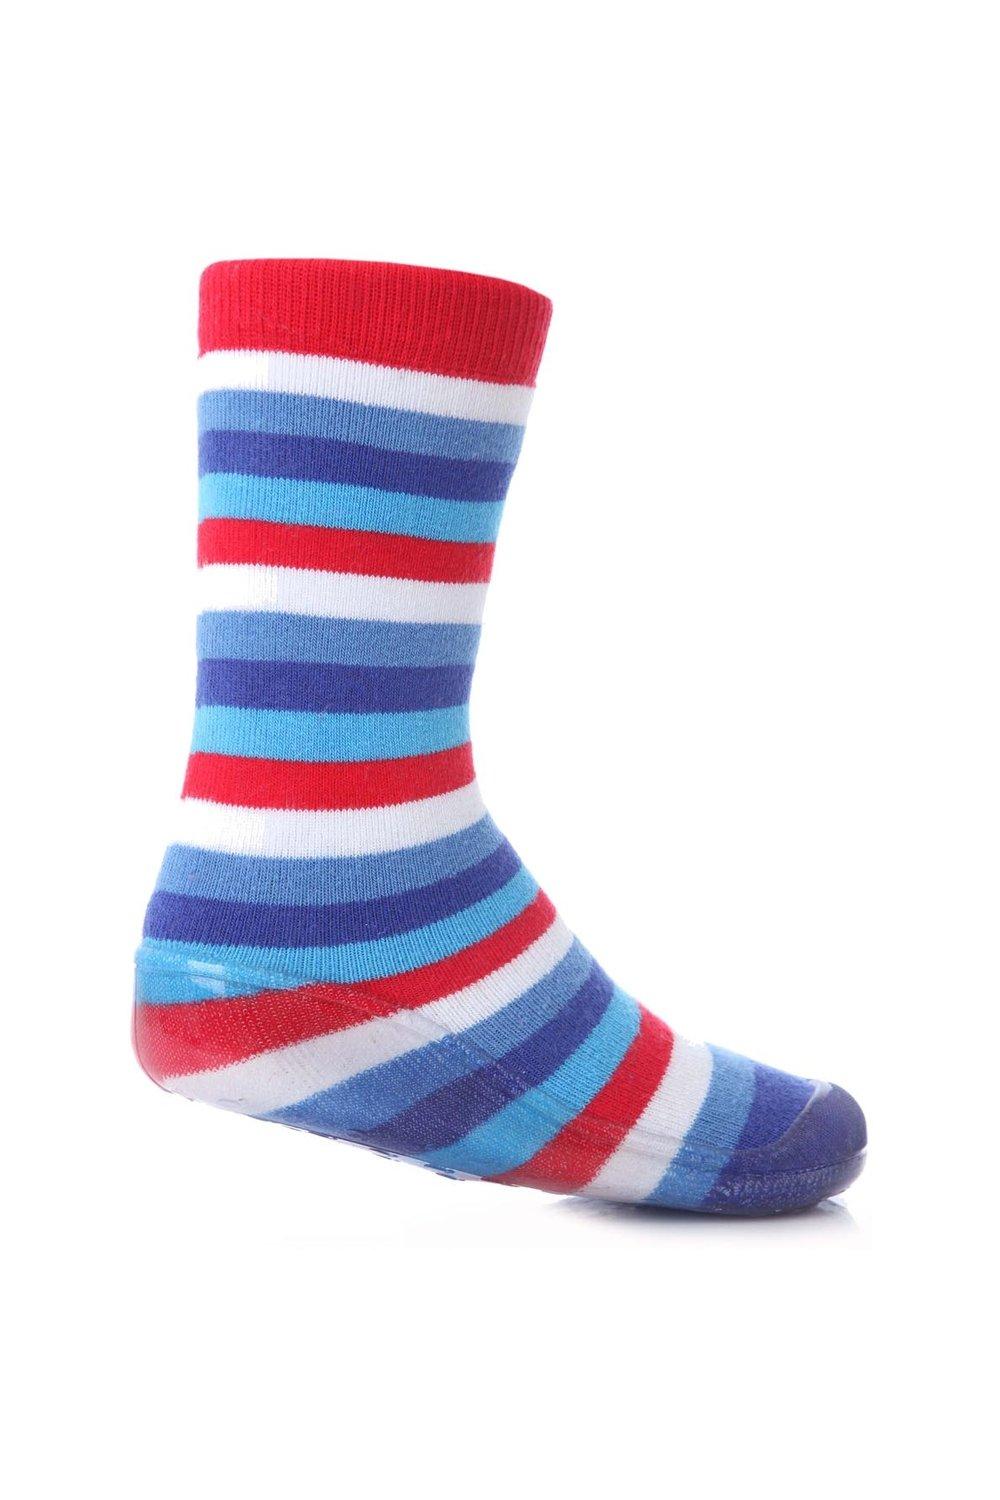 цена 1 пара полосатых носков-тапочек Gripper со скидкой 25% на этот стиль SOCKSHOP, синий